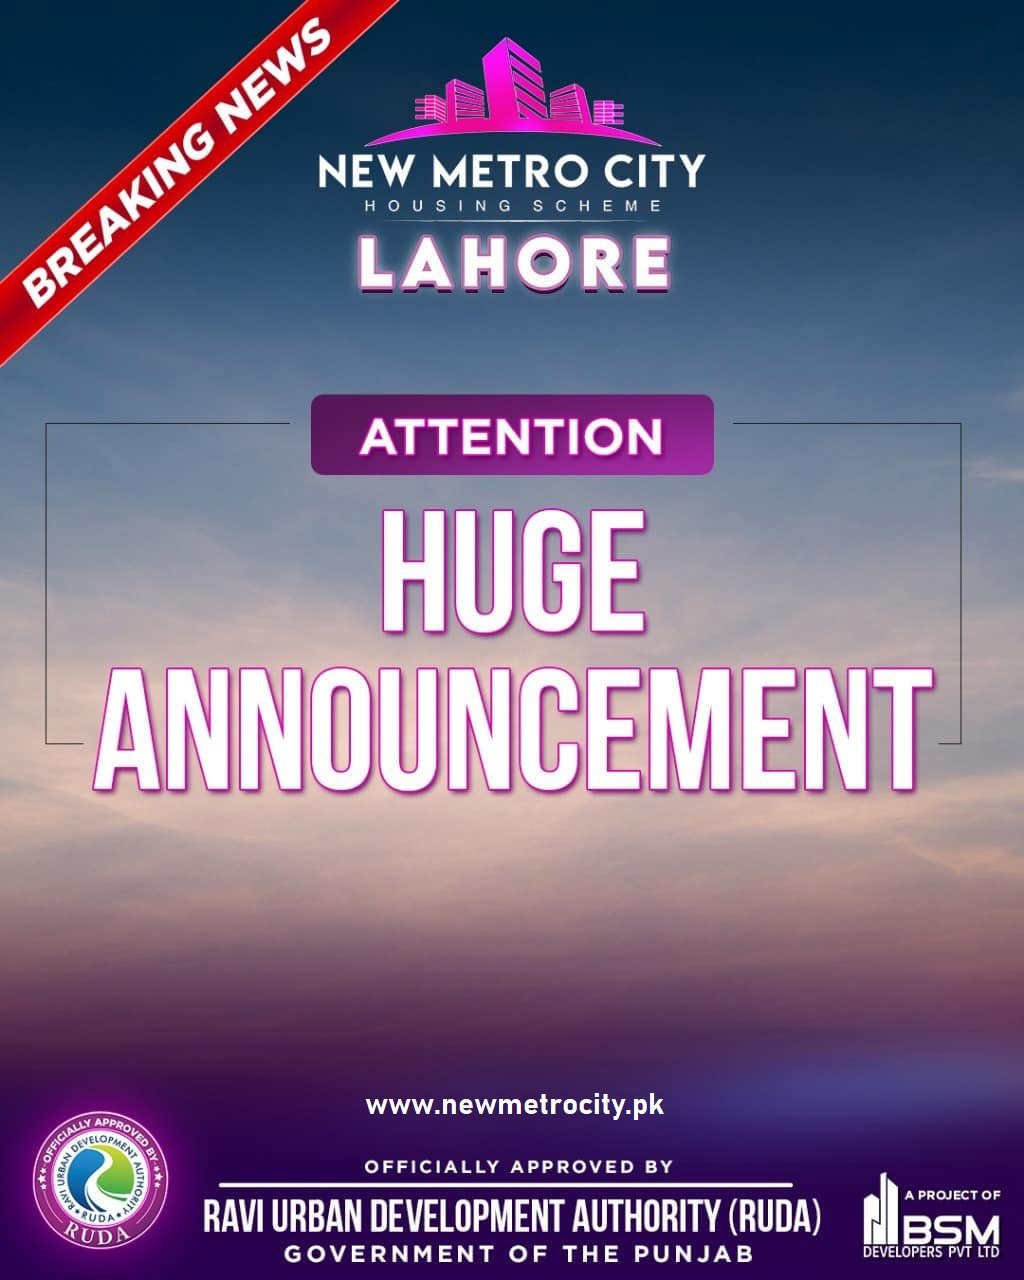 New Metro City Lahore Announcement